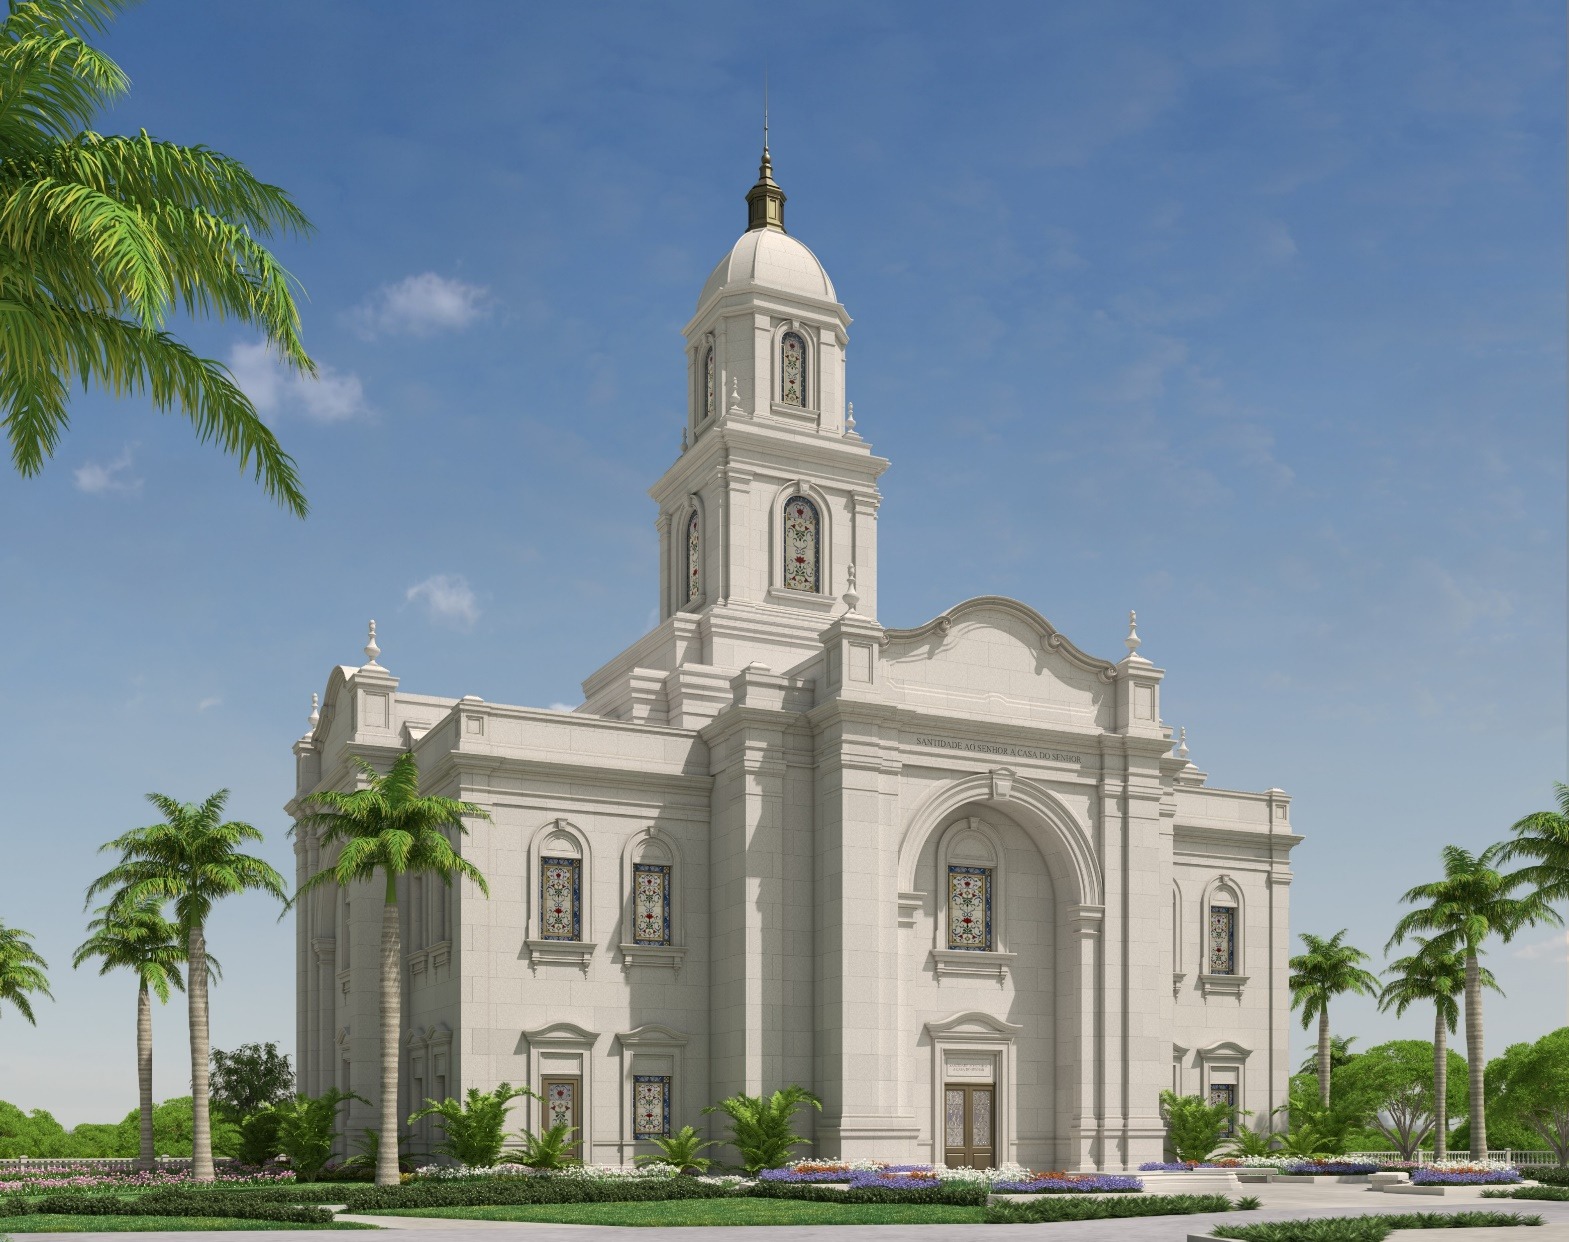 Salvador ganhará templo sustentável projetado com traços da arquitetura colonial da Bahia